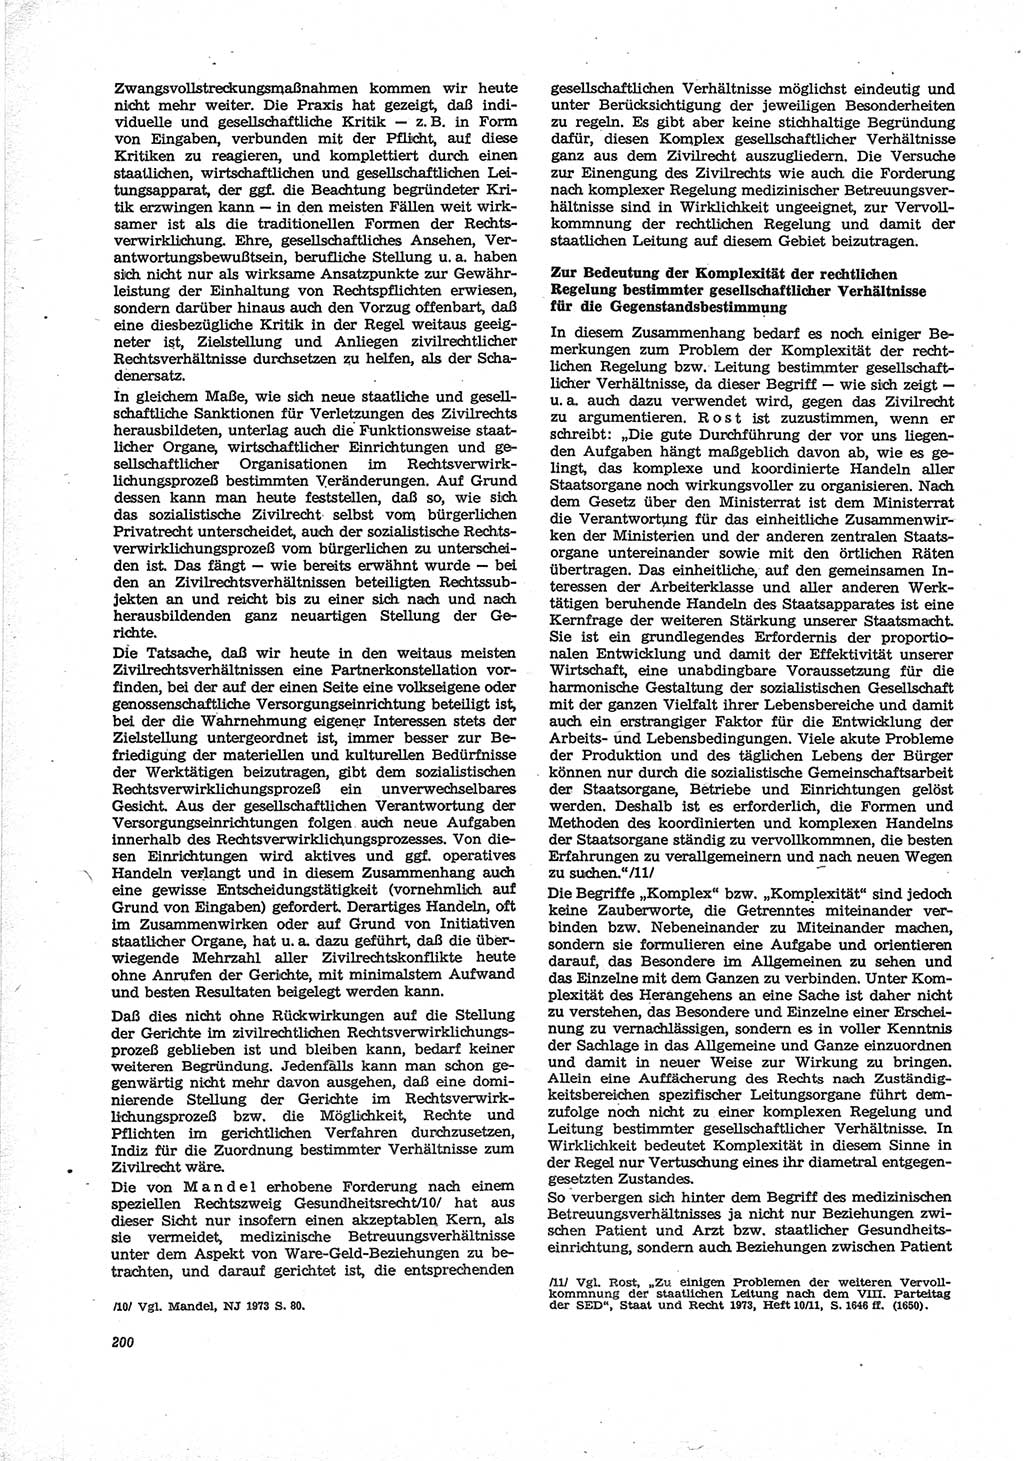 Neue Justiz (NJ), Zeitschrift für Recht und Rechtswissenschaft [Deutsche Demokratische Republik (DDR)], 28. Jahrgang 1974, Seite 200 (NJ DDR 1974, S. 200)